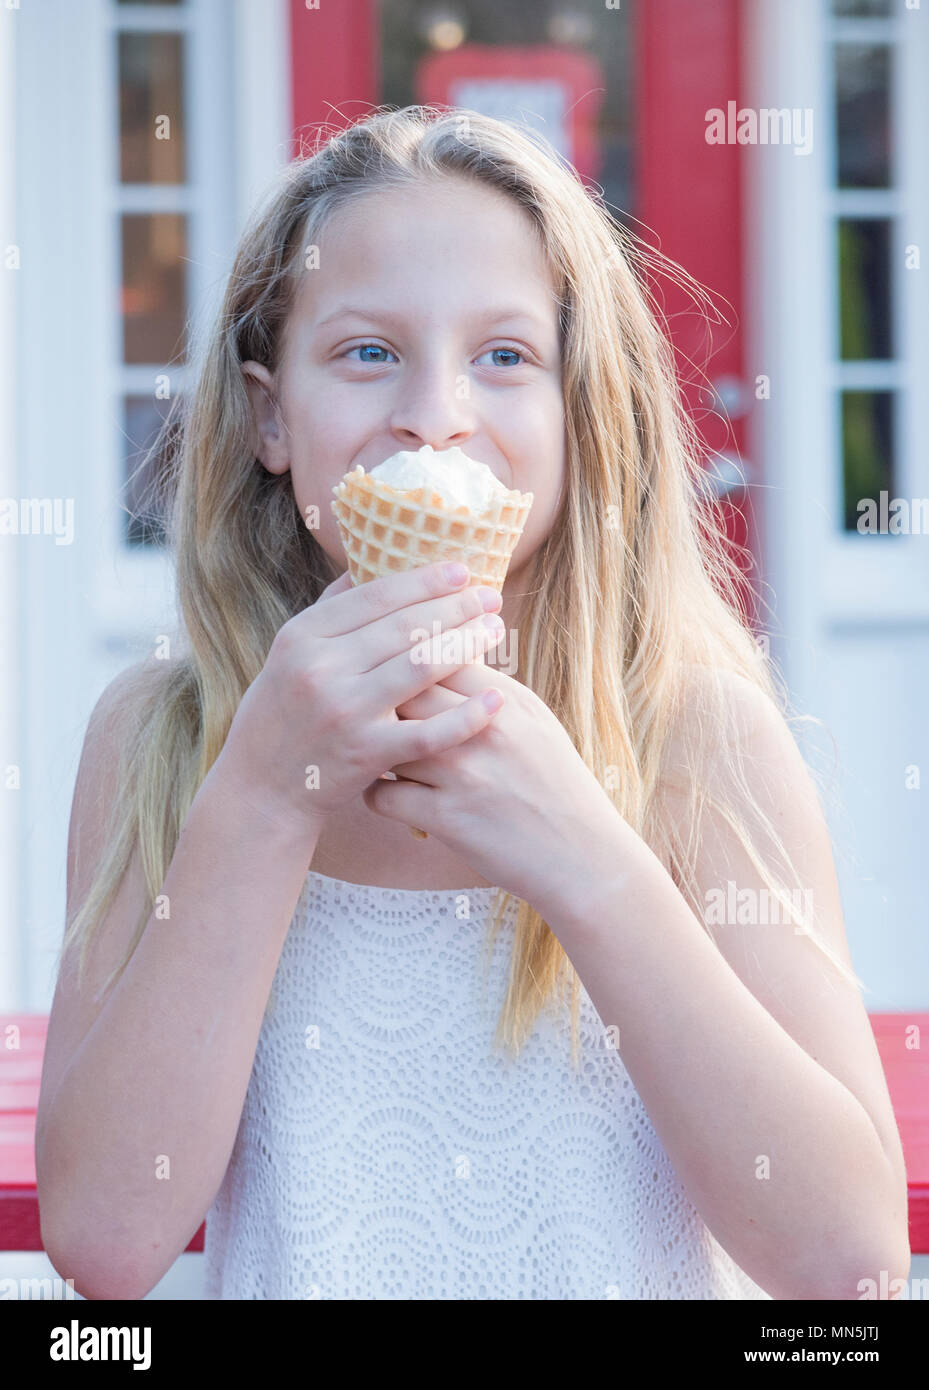 10 anno vecchia ragazza con lunghi capelli biondi godendo di un cono gelato. Immagine viene dalla vita in su. Foto Stock